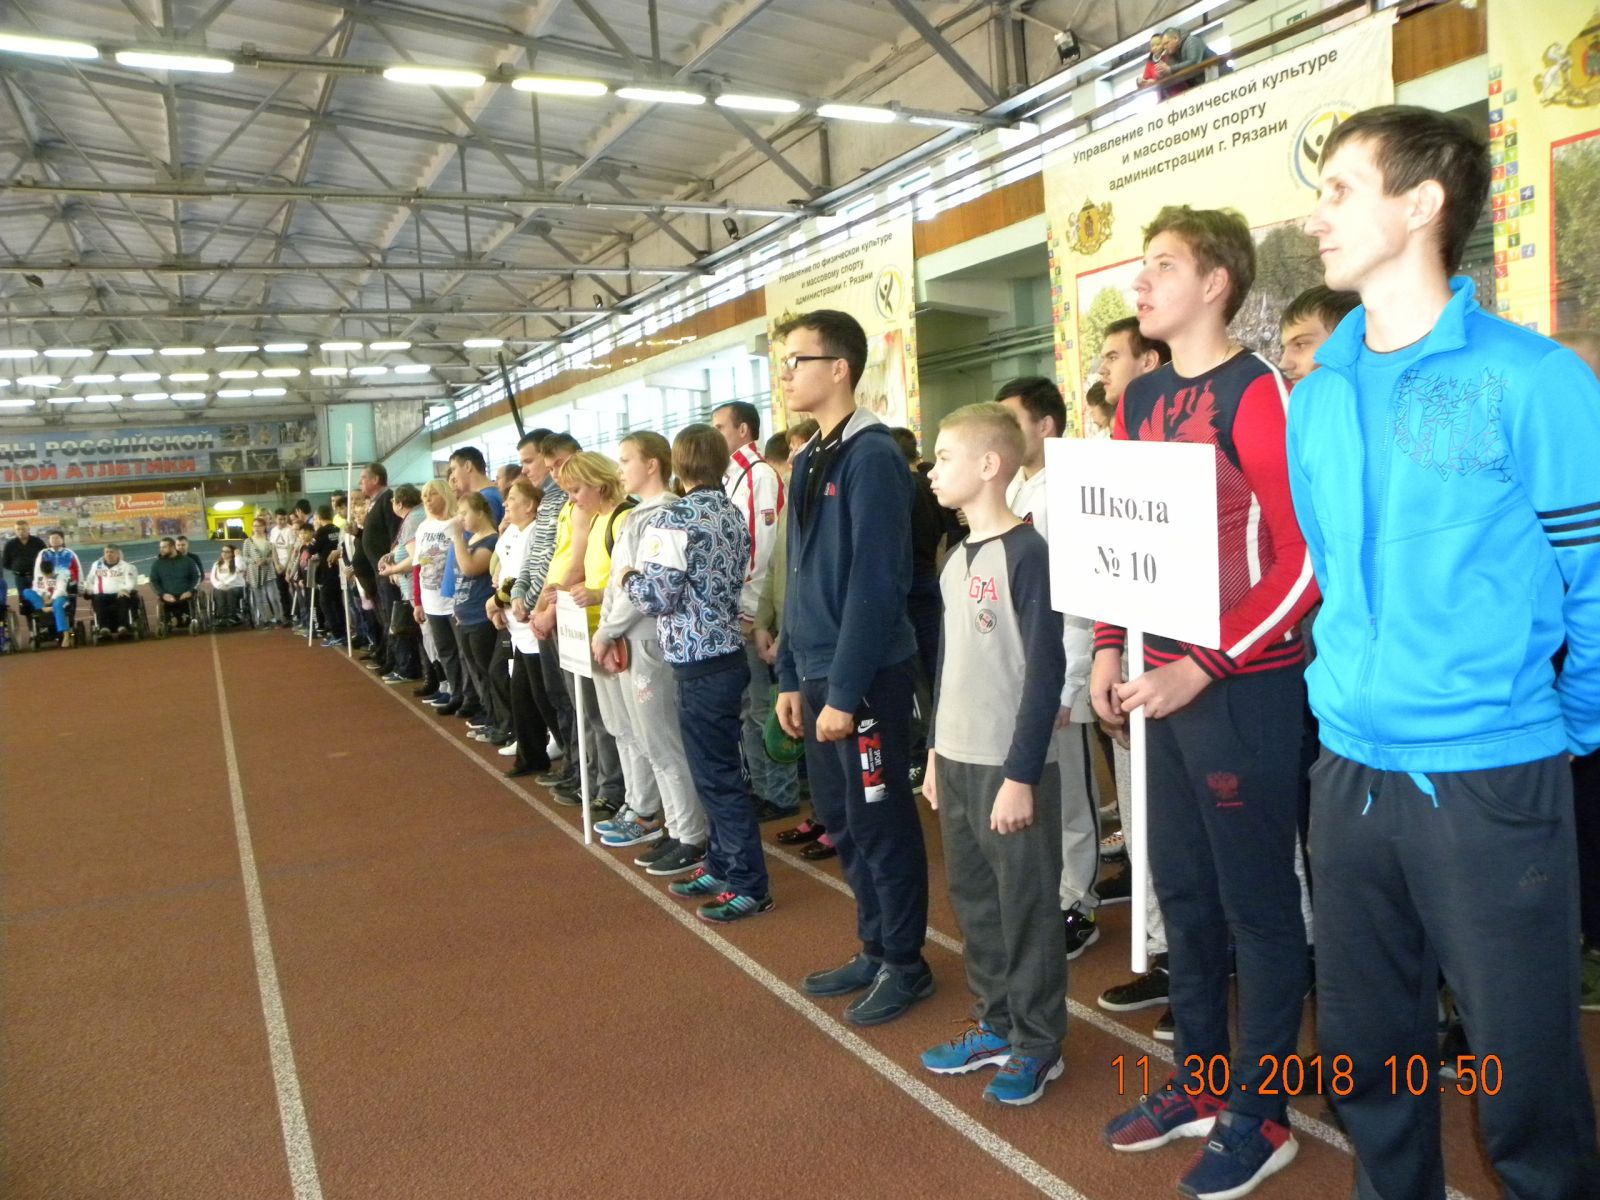 В Рязани состоялся открытый городской спортивно-оздоровительный фестиваль «Триумф» среди лиц с ограниченными возможностями здоровья, посвященный Международному дню инвалидов